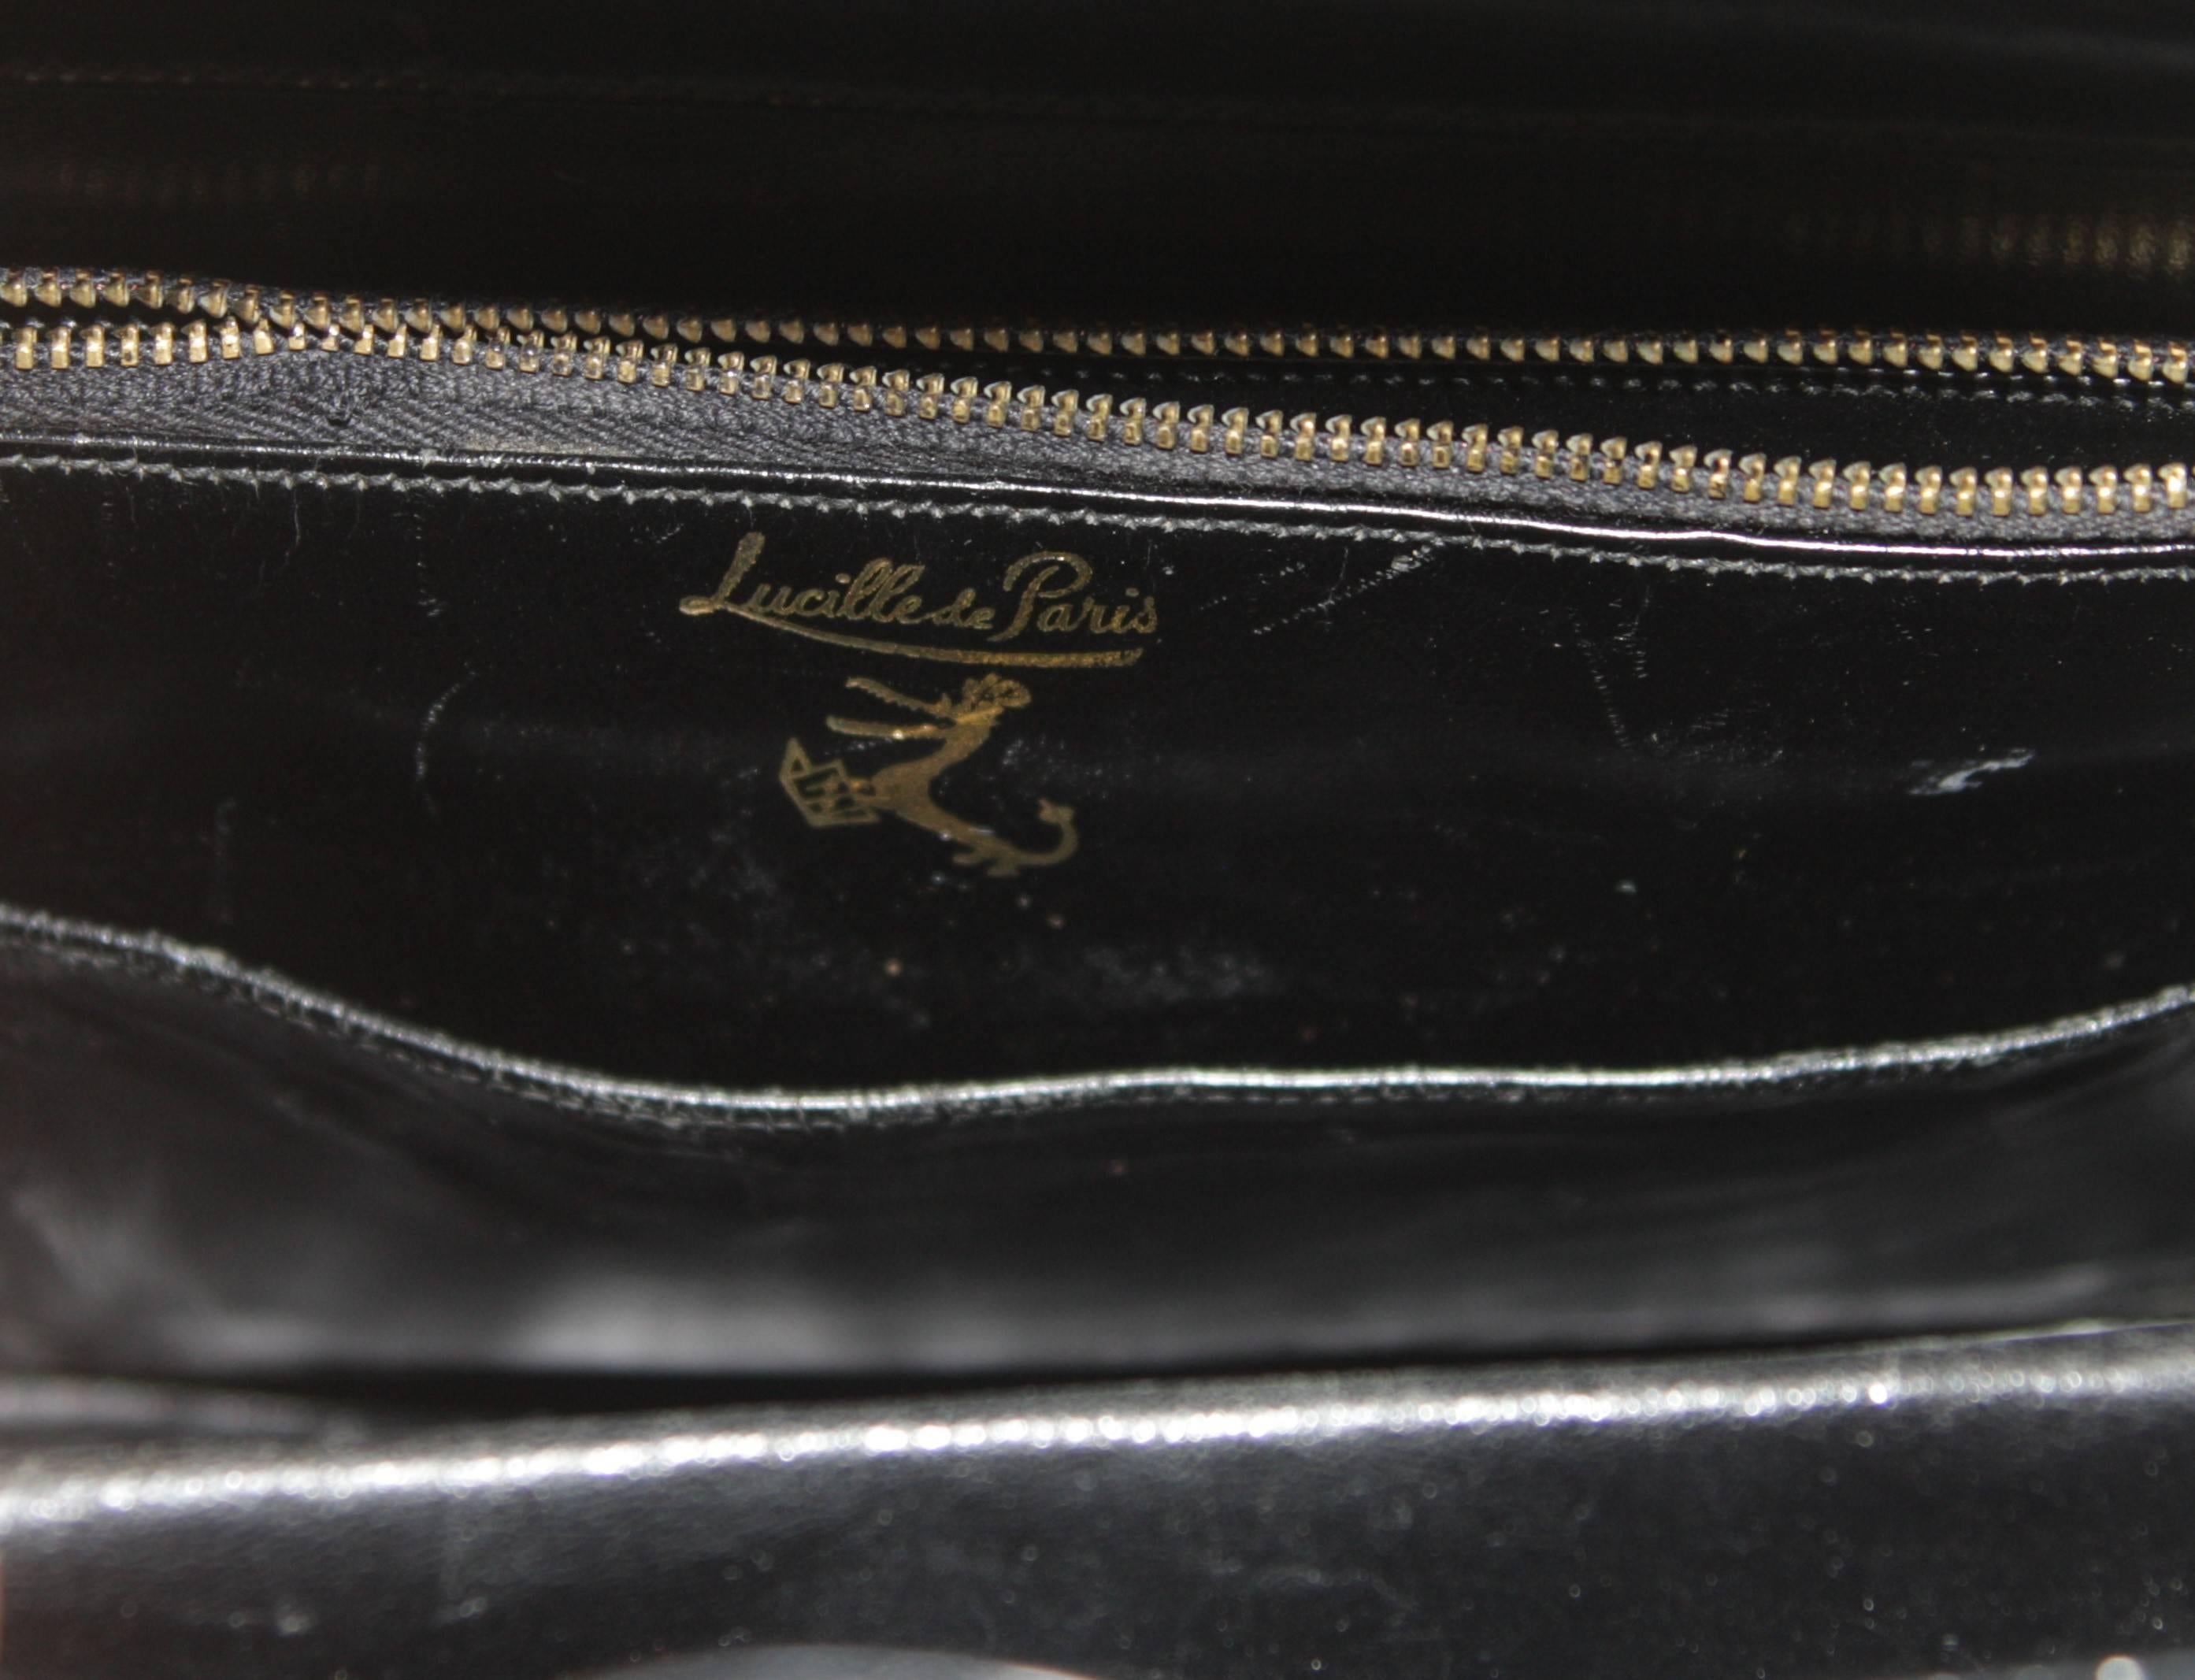 Lucille De Paris Structured Alligator Handbag with Double Straps 3